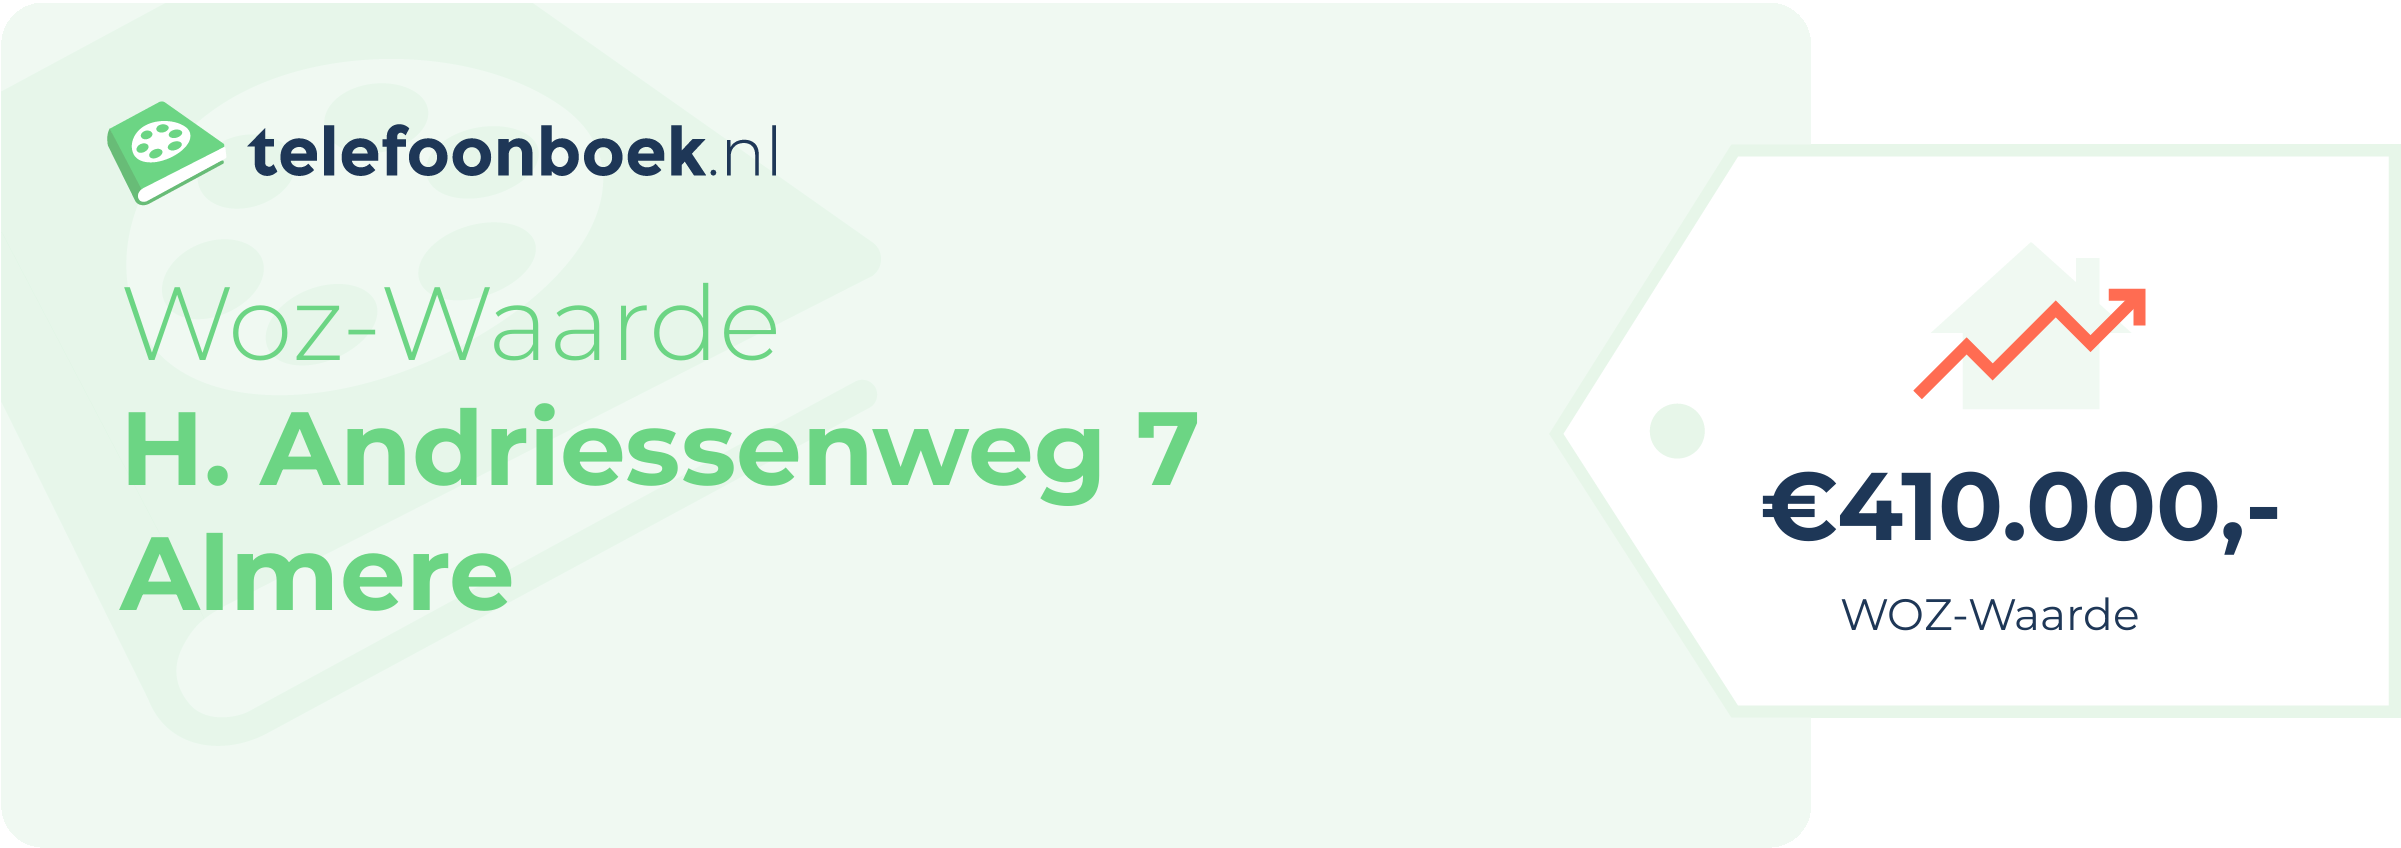 WOZ-waarde H. Andriessenweg 7 Almere